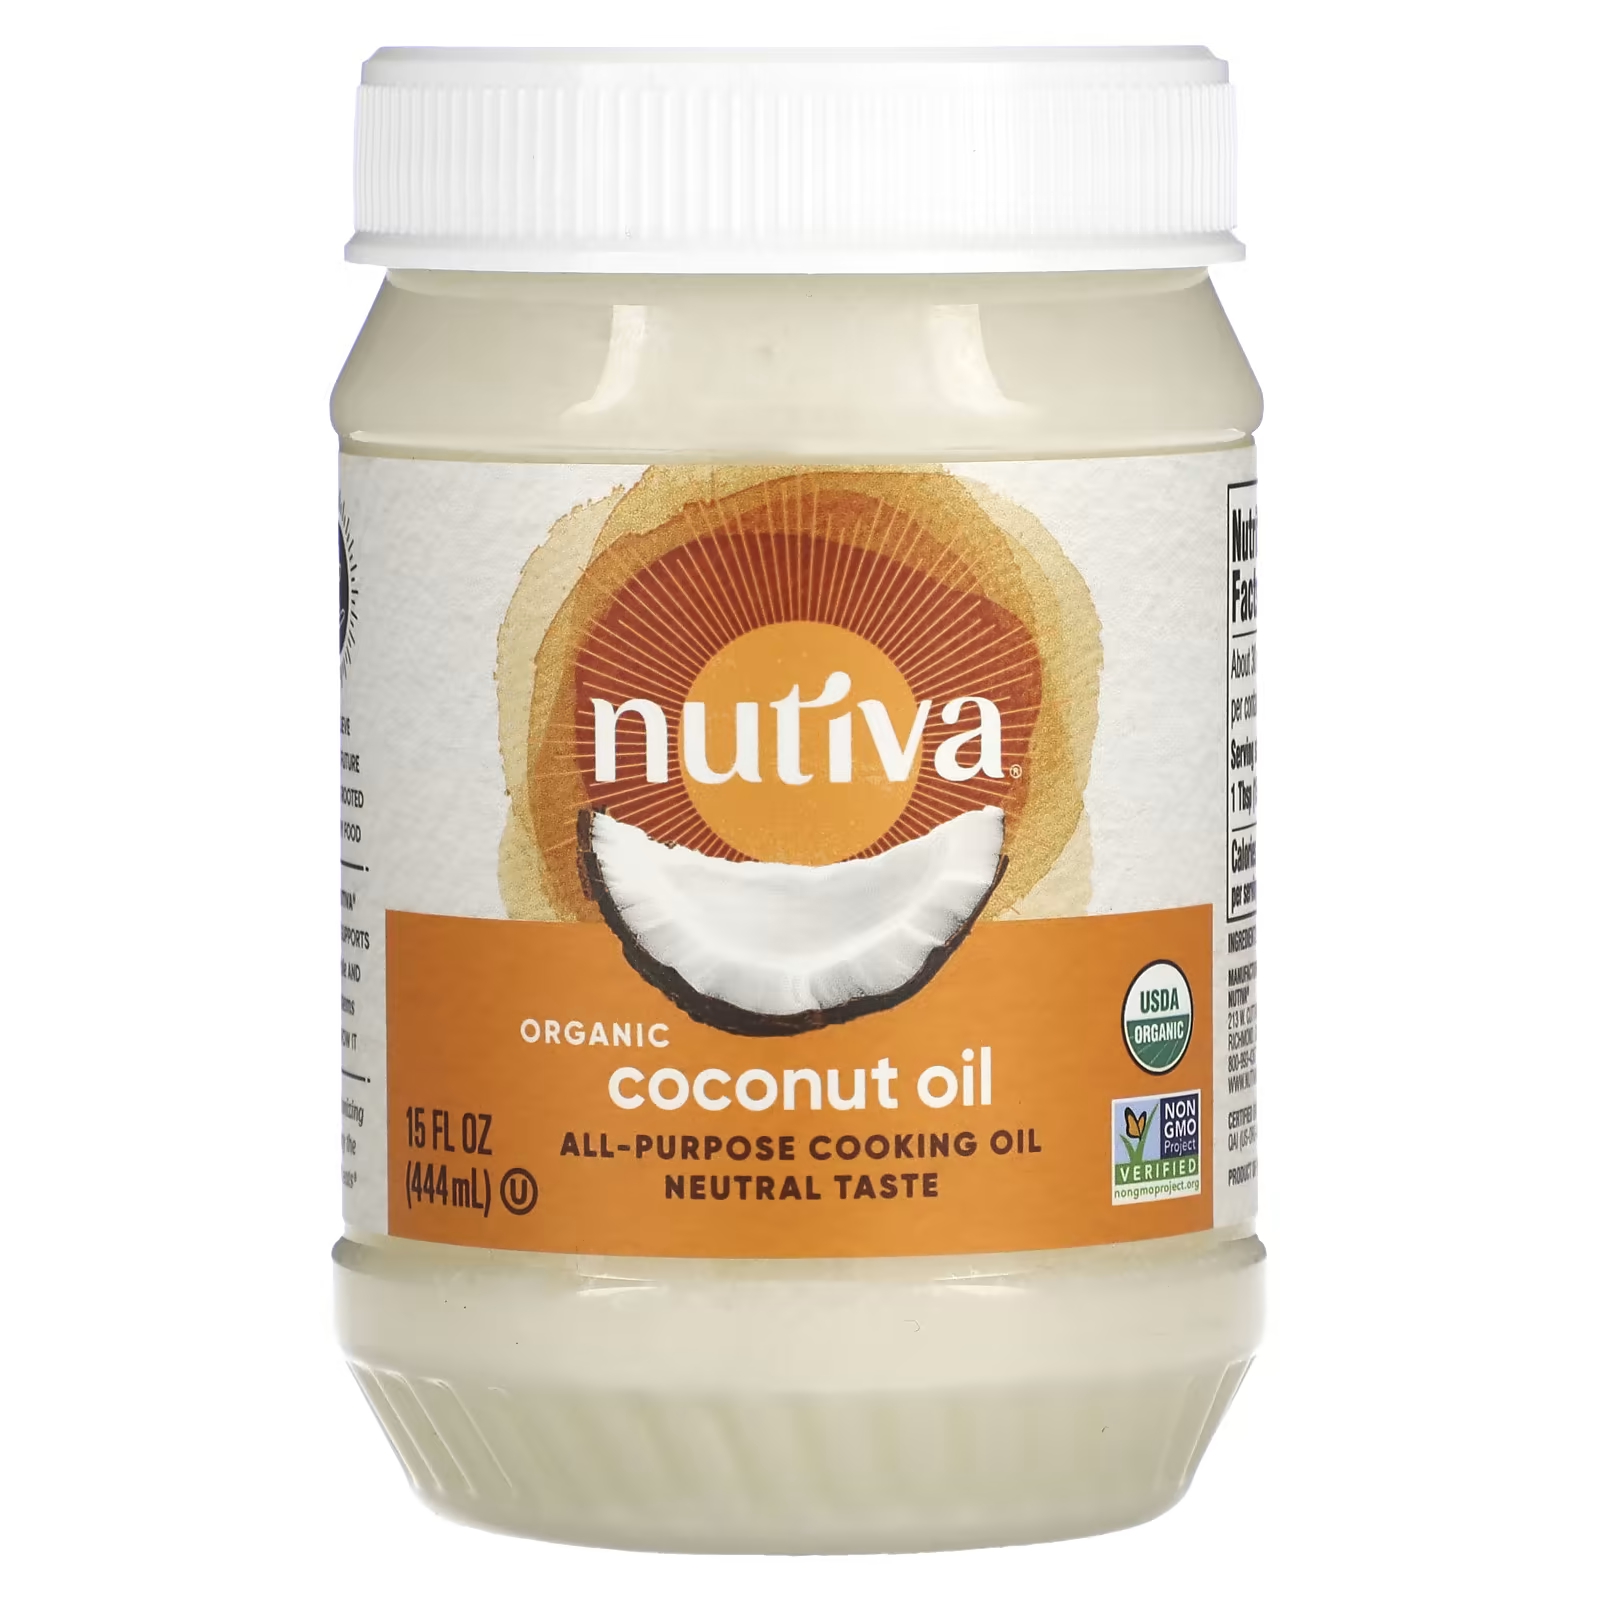 Универсальное кулинарное масло, органическое кокосовое масло, 15 жидких унций (444 мл) Nutiva nutiva органическое регенеративно выращенное кокосовое масло первого отжима 444 мл 15 жидк унций